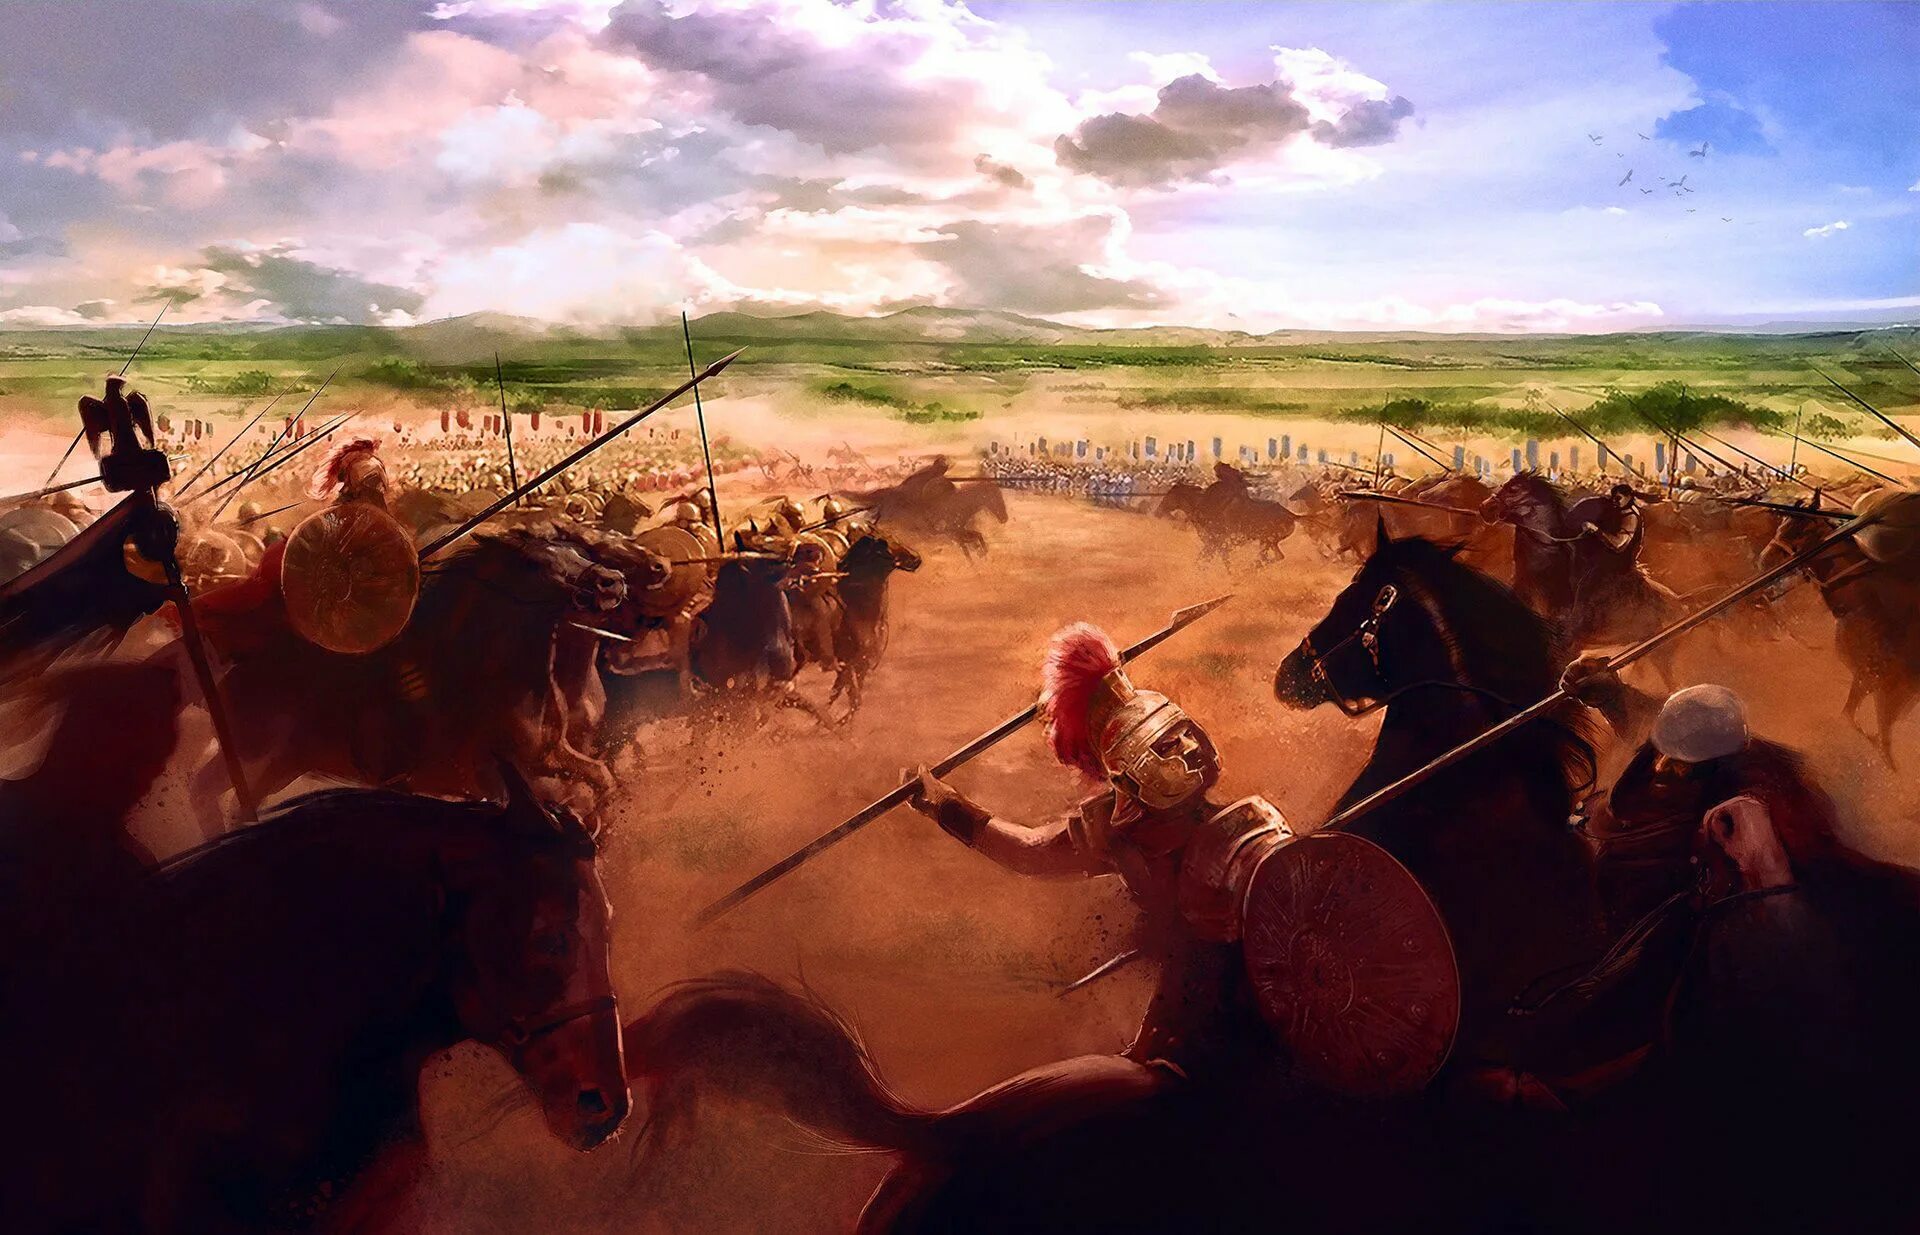 Ганнибал битва при Каннах. Битва при Каннах 216 год до н.э. Ганнибалбтва при Каннах. Ганнибал Барка битва при Каннах. Битва при каннах дата